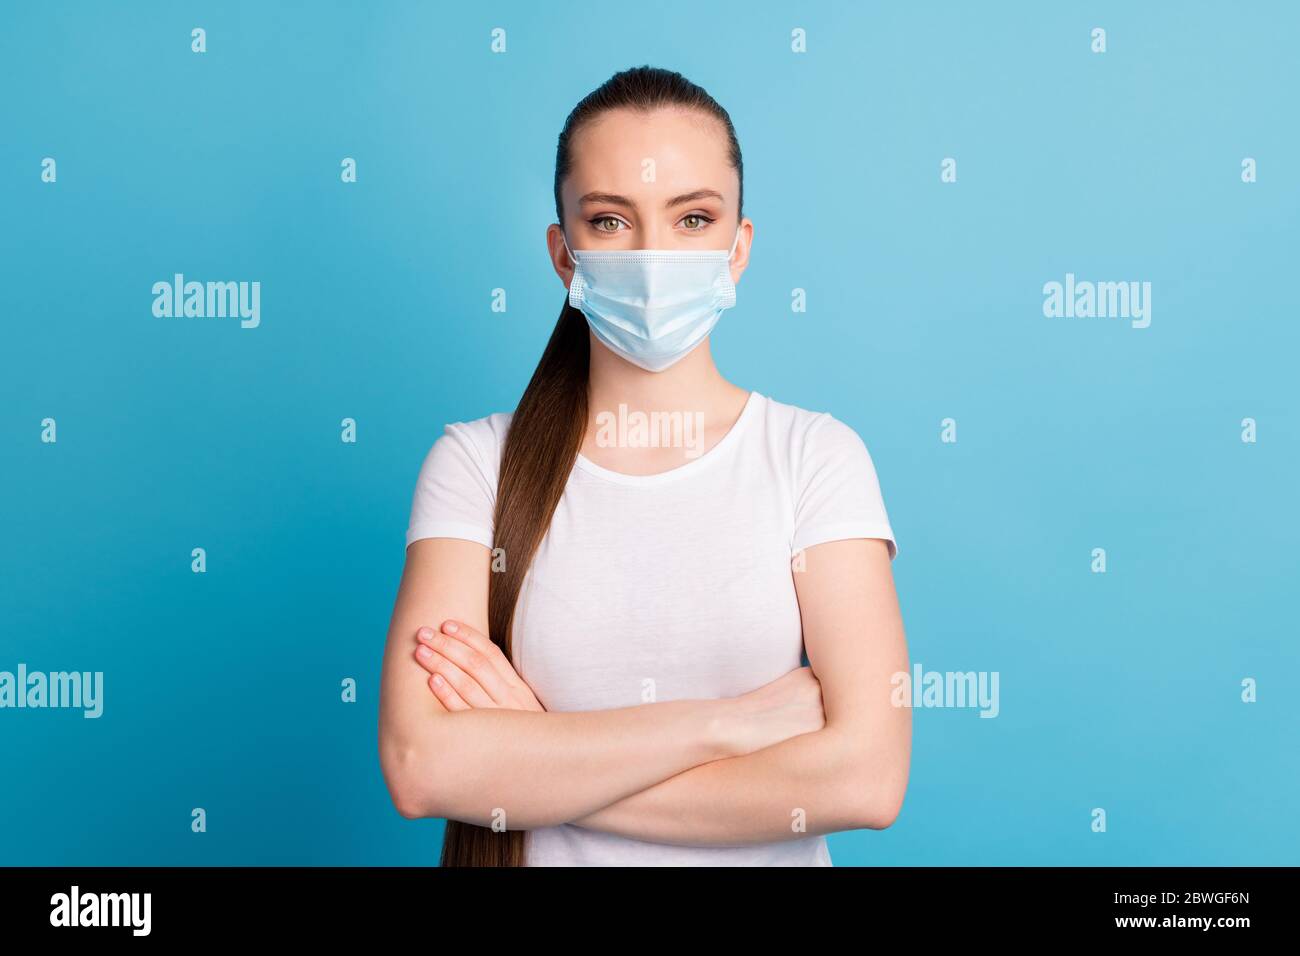 Foto von selbstbewussten behaupten Dame Krankenhaus Untersuchung Business-Center hören Arzt Diagnose Arme gekreuzt tragen schützen Gesicht medizinische Maske weiß t Stockfoto